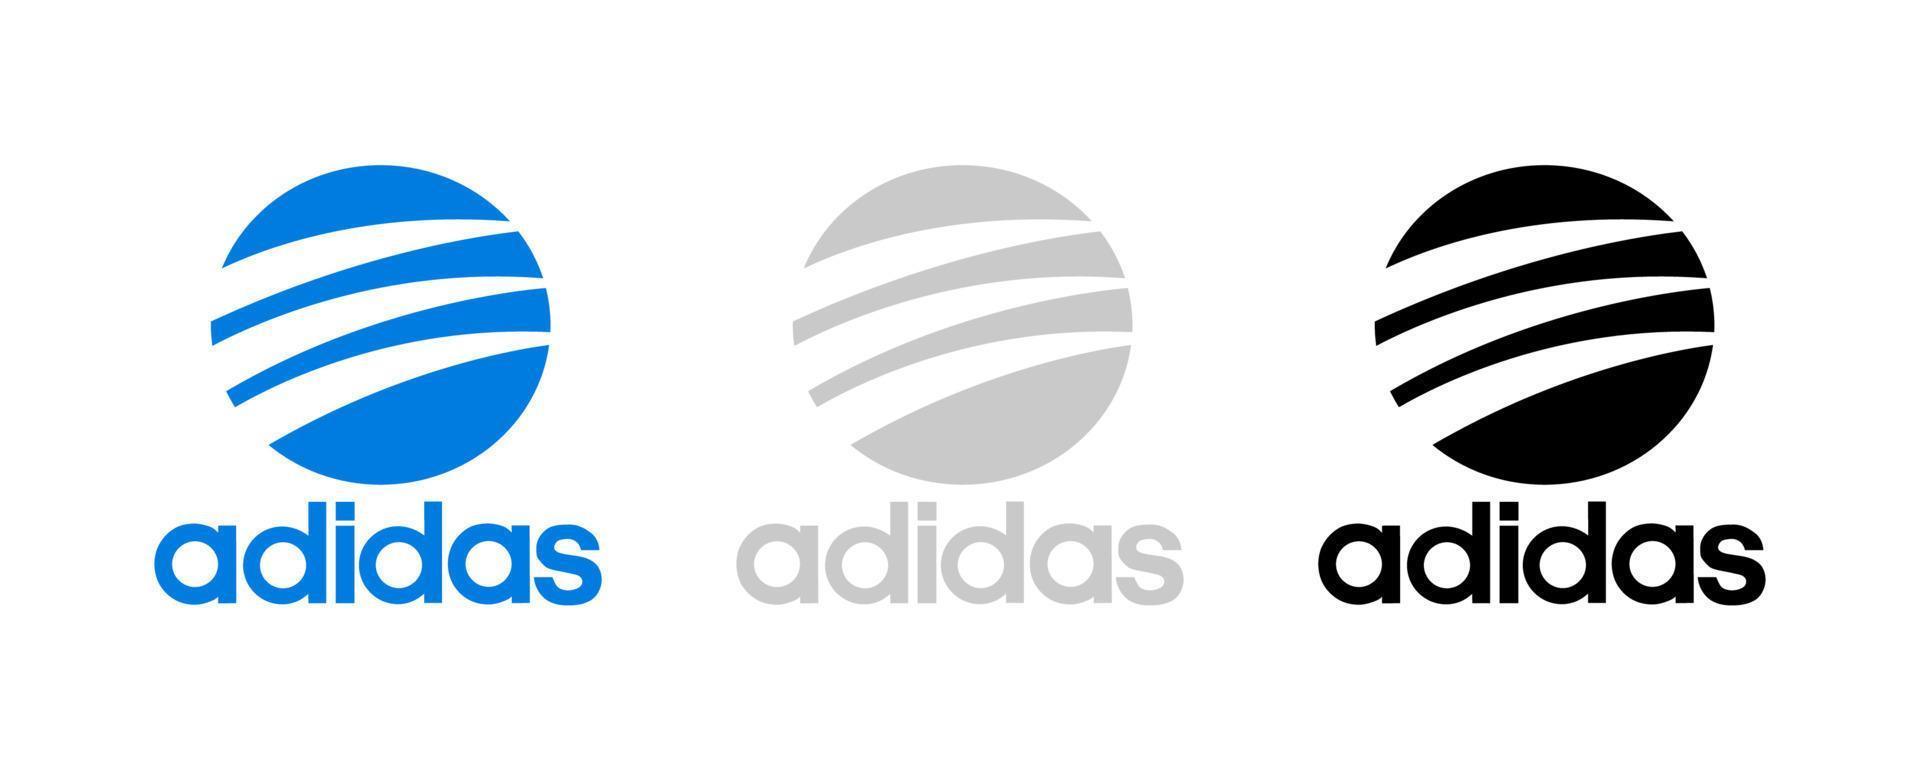 vecteur de logo adidas, vecteur gratuit d'icône adidas